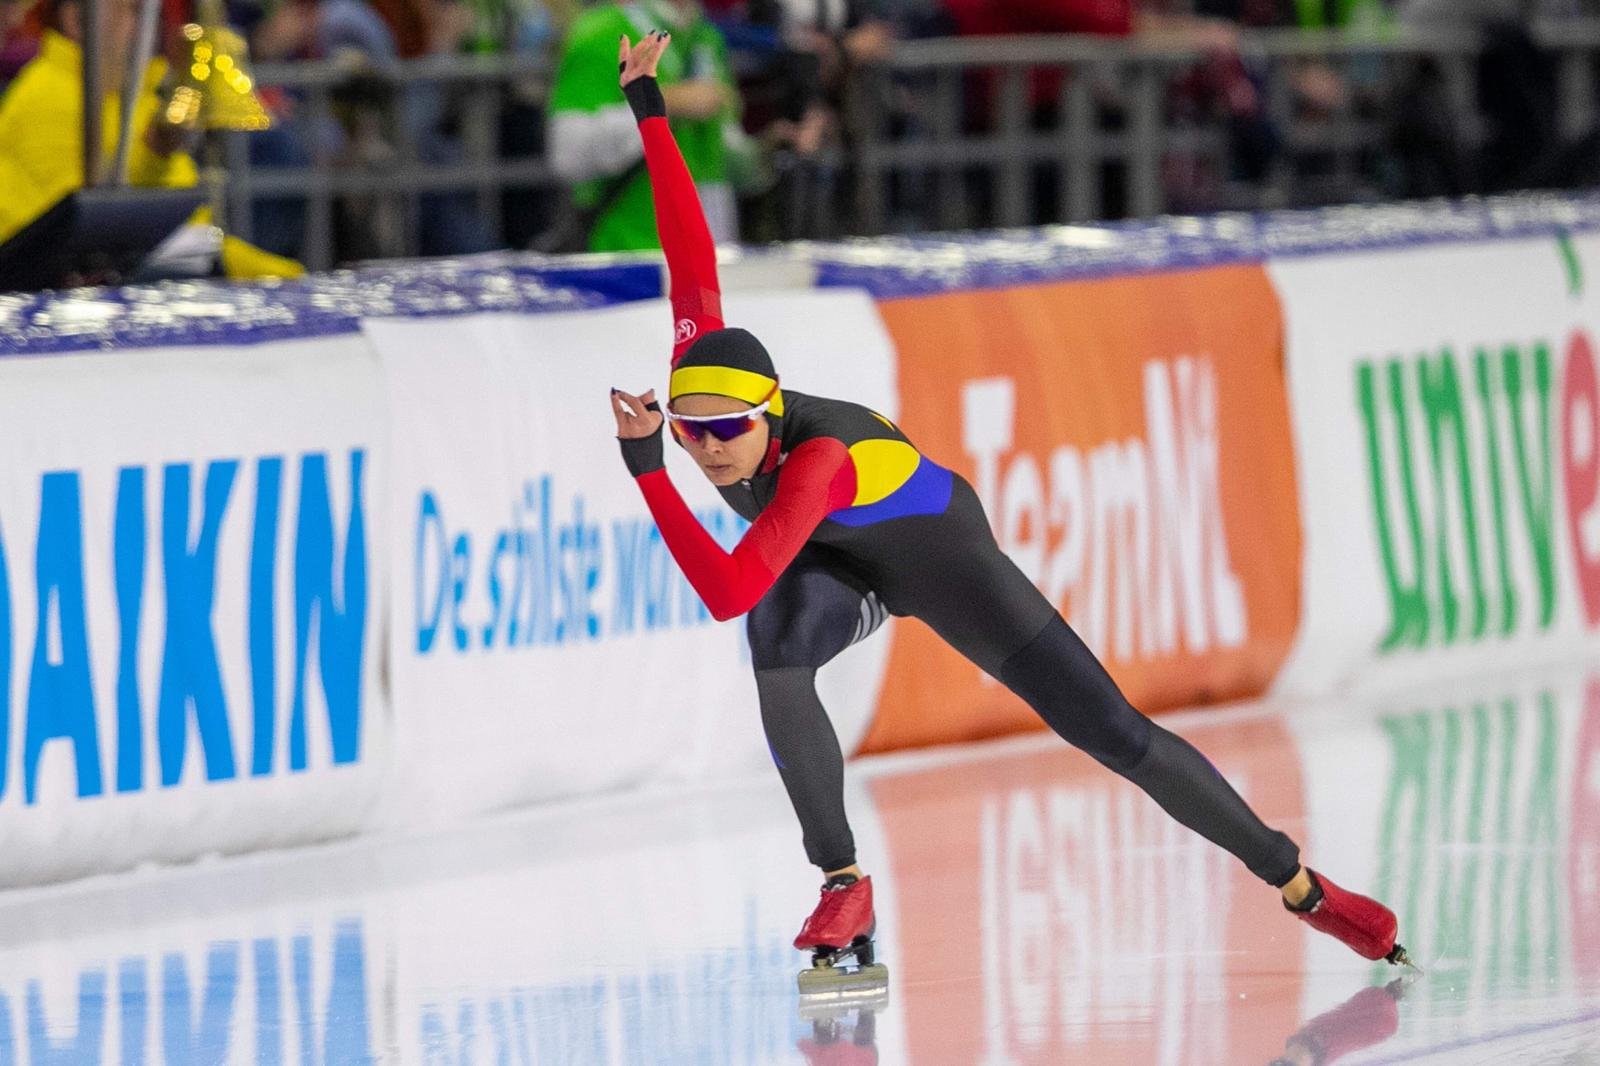  JO 2022 Beijing: Mihaela Hogaș, penultimul loc în proba de patinaj viteză 500 m